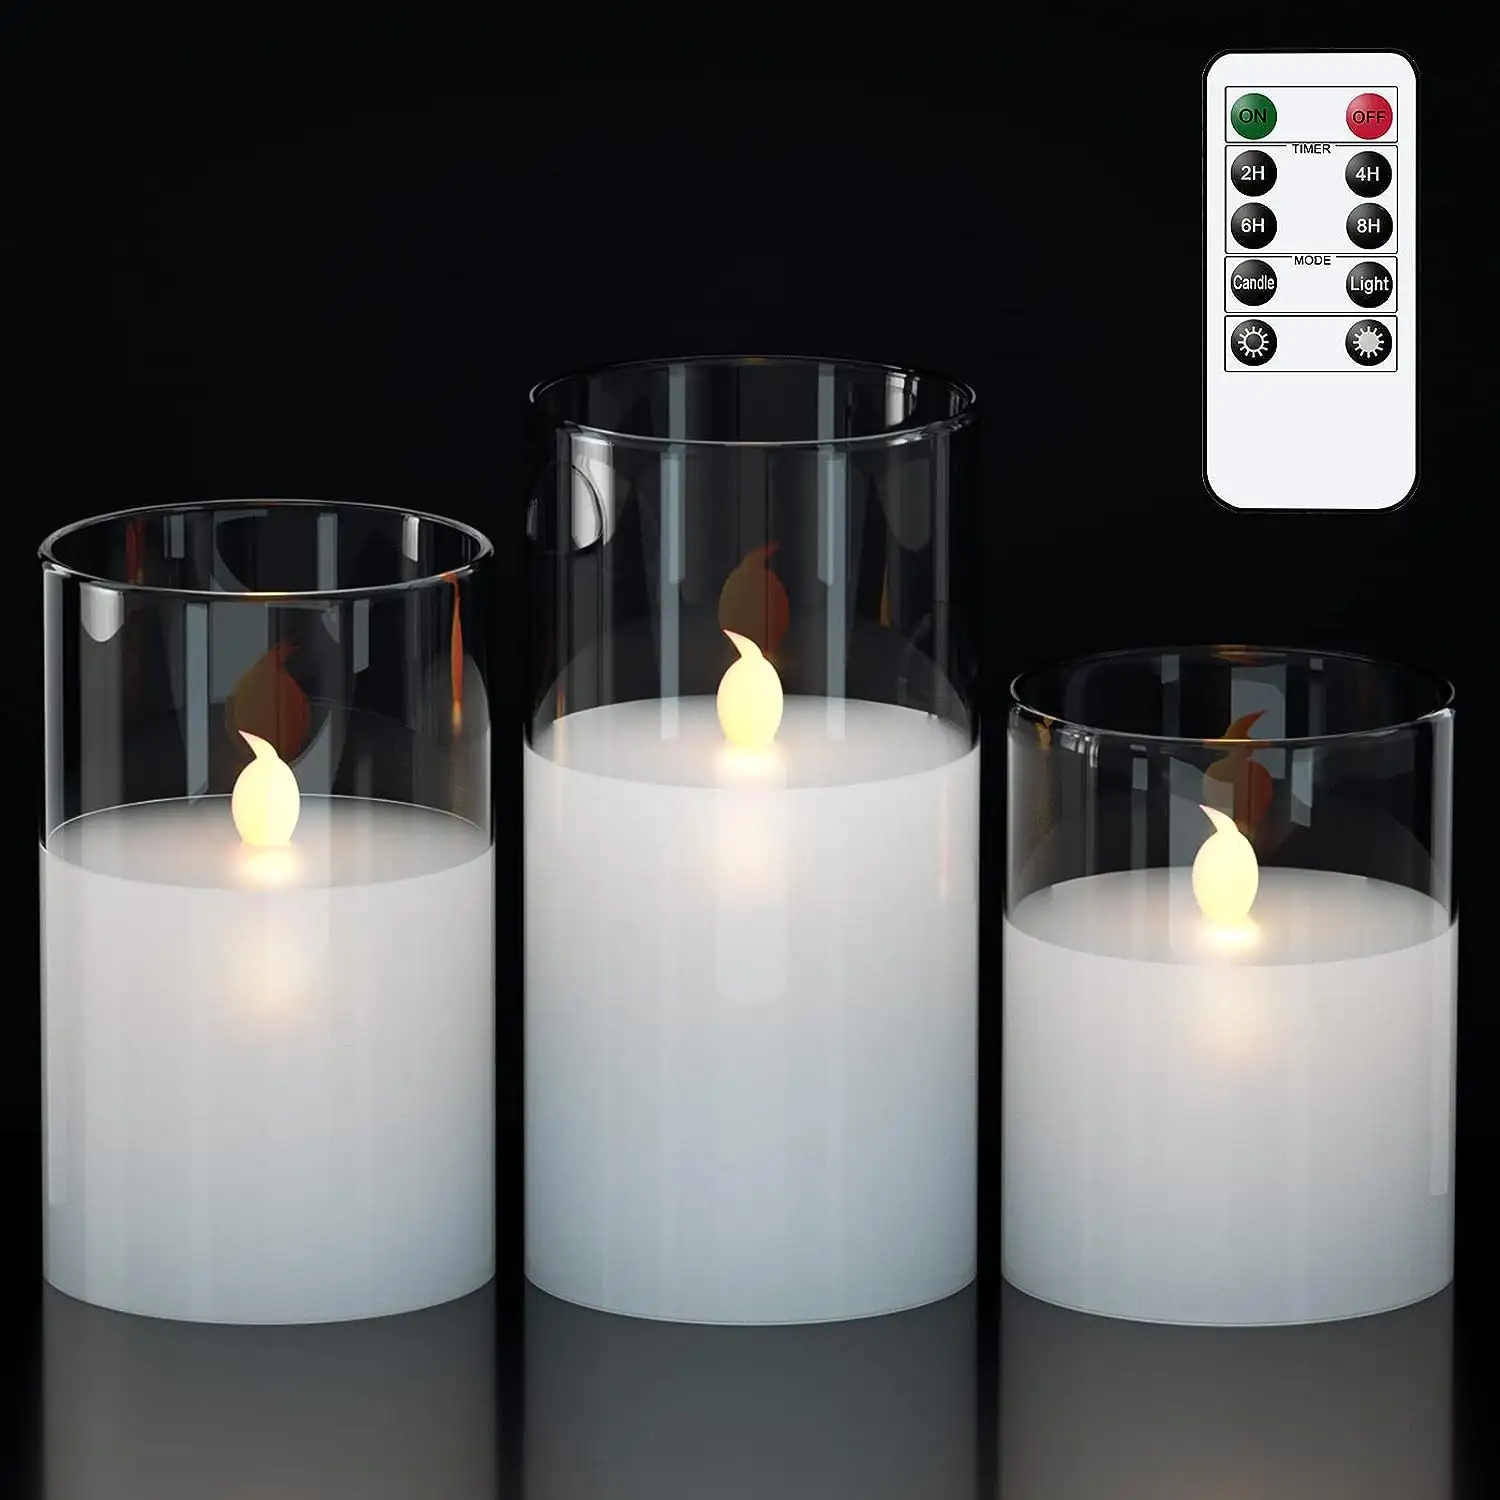 Lilin kaca abu-abu dengan pengatur waktu dan 10 tombol pengendali jarak jauh tanpa api LED lilin asli cahaya hangat